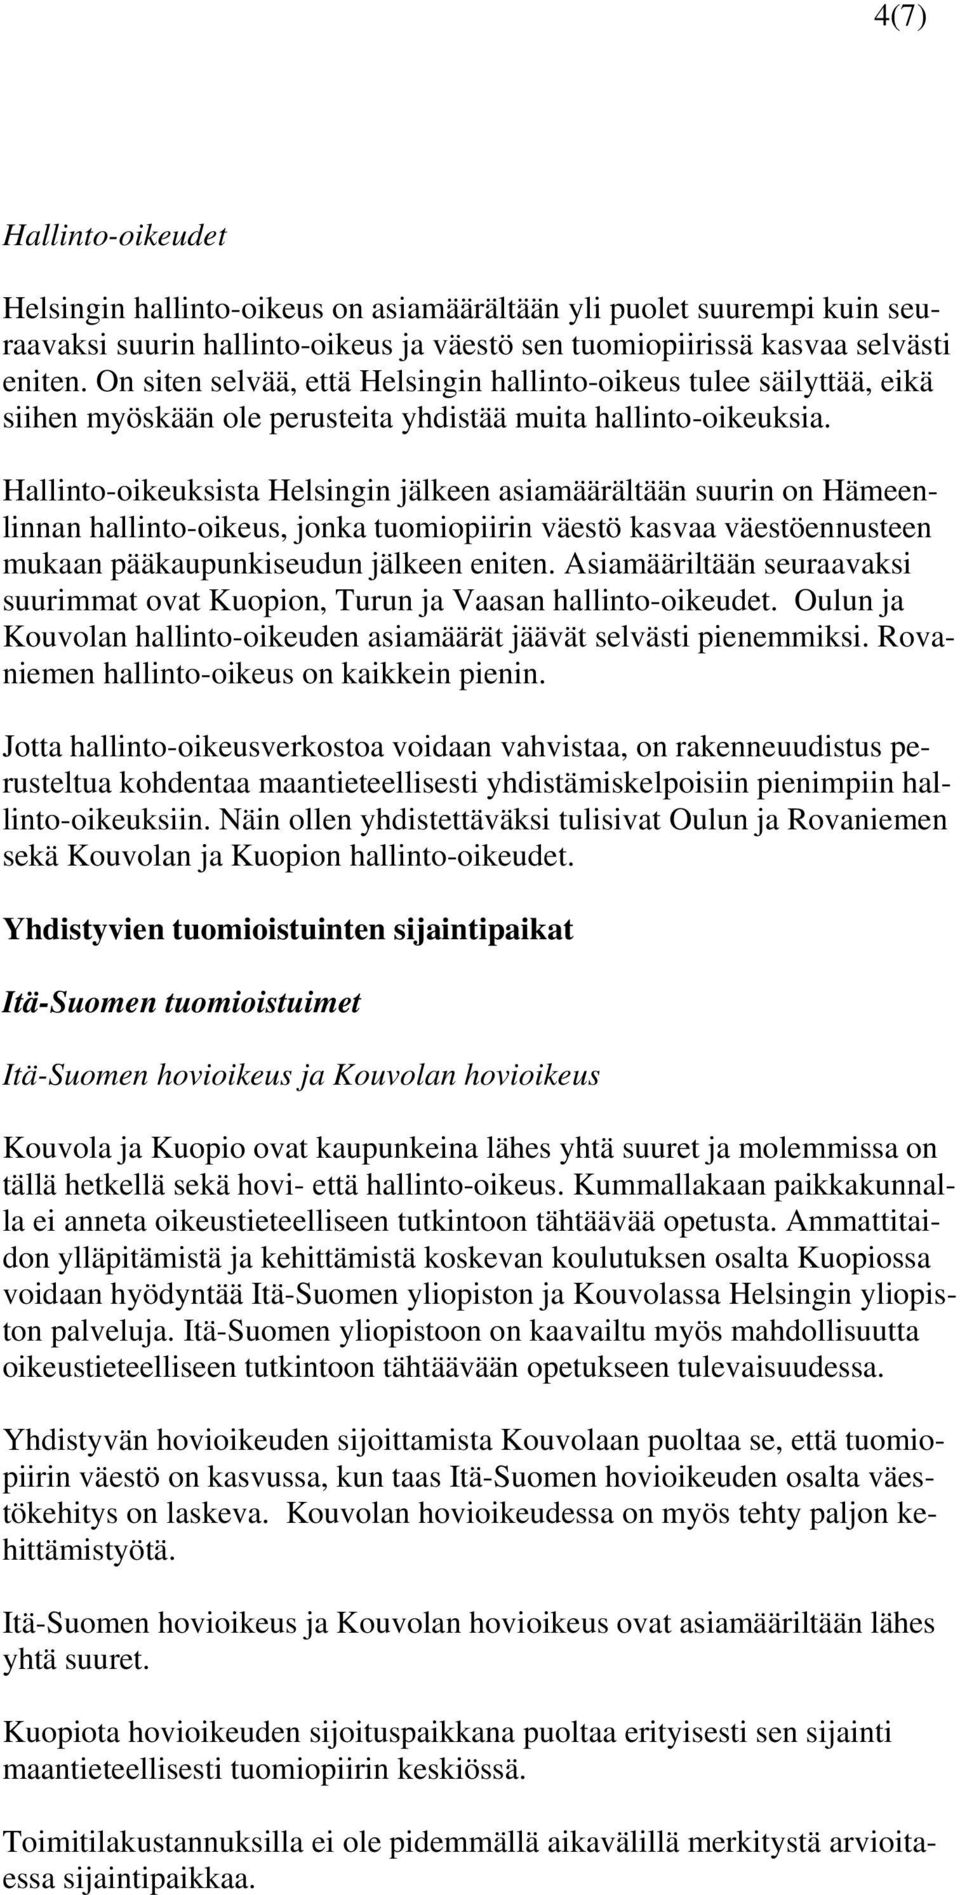 Hallinto-oikeuksista Helsingin jälkeen asiamäärältään suurin on Hämeenlinnan hallinto-oikeus, jonka tuomiopiirin väestö kasvaa väestöennusteen mukaan pääkaupunkiseudun jälkeen eniten.